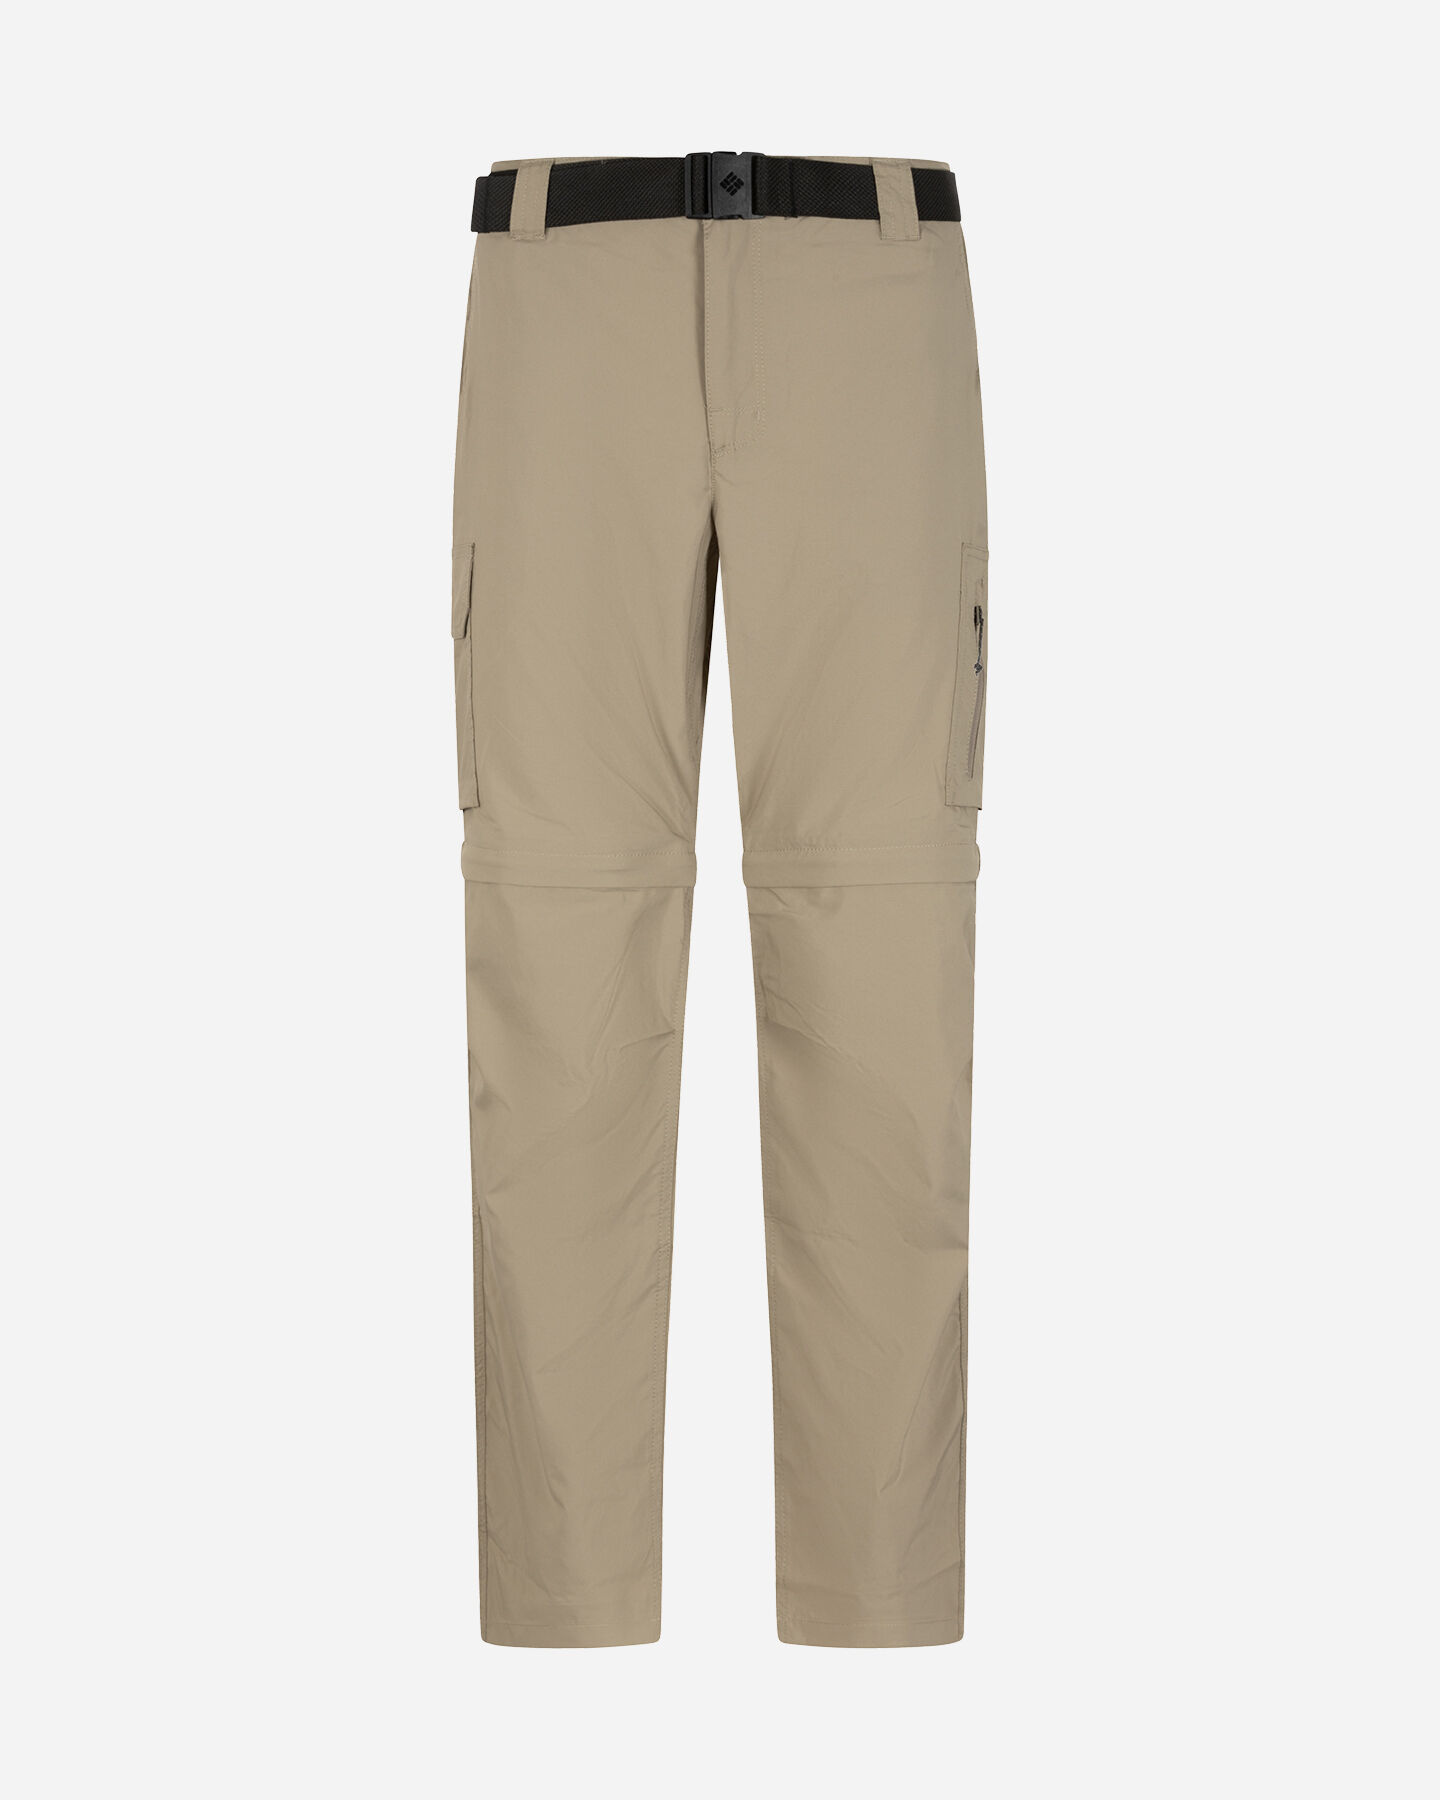  Pantalone outdoor COLUMBIA SILVER RIDGE M S5553529|221|3032 scatto 0